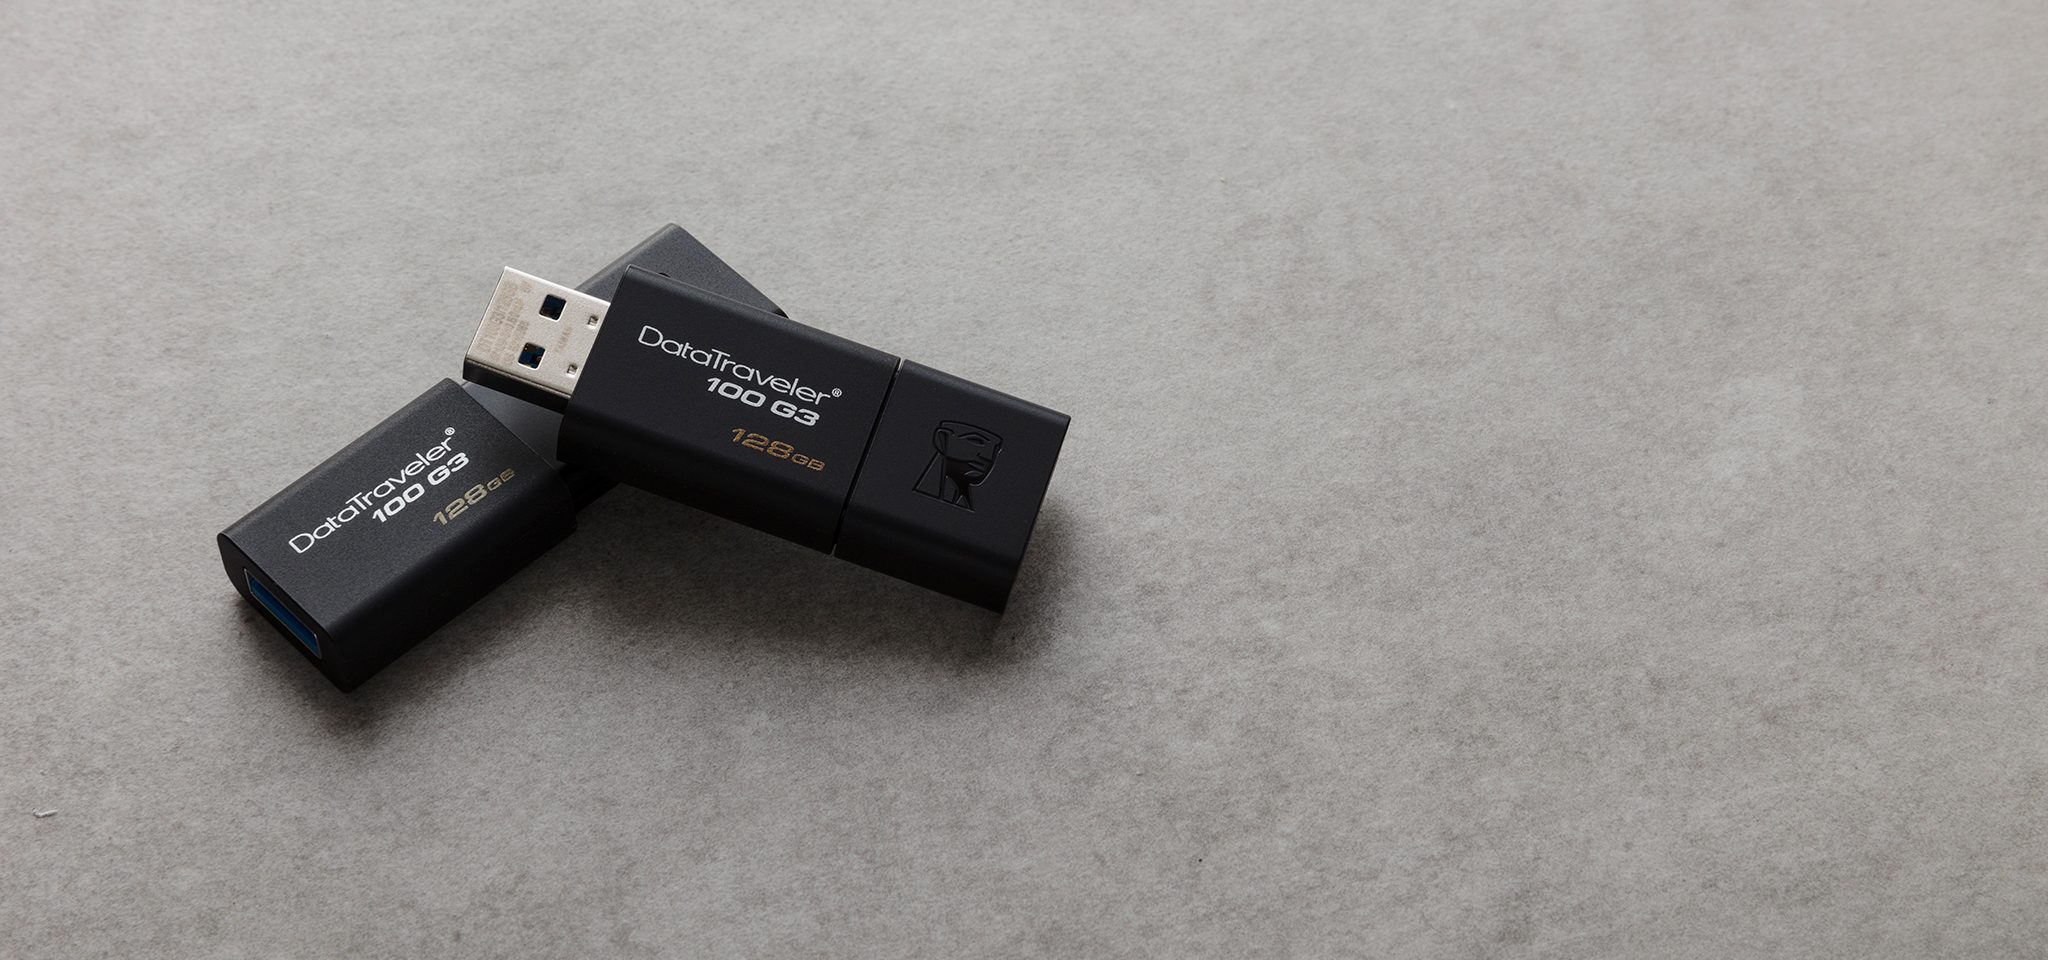 Флеш-накопитель Kingston 16GB USB 3.0 Data Traveler (DT100-G3) 2